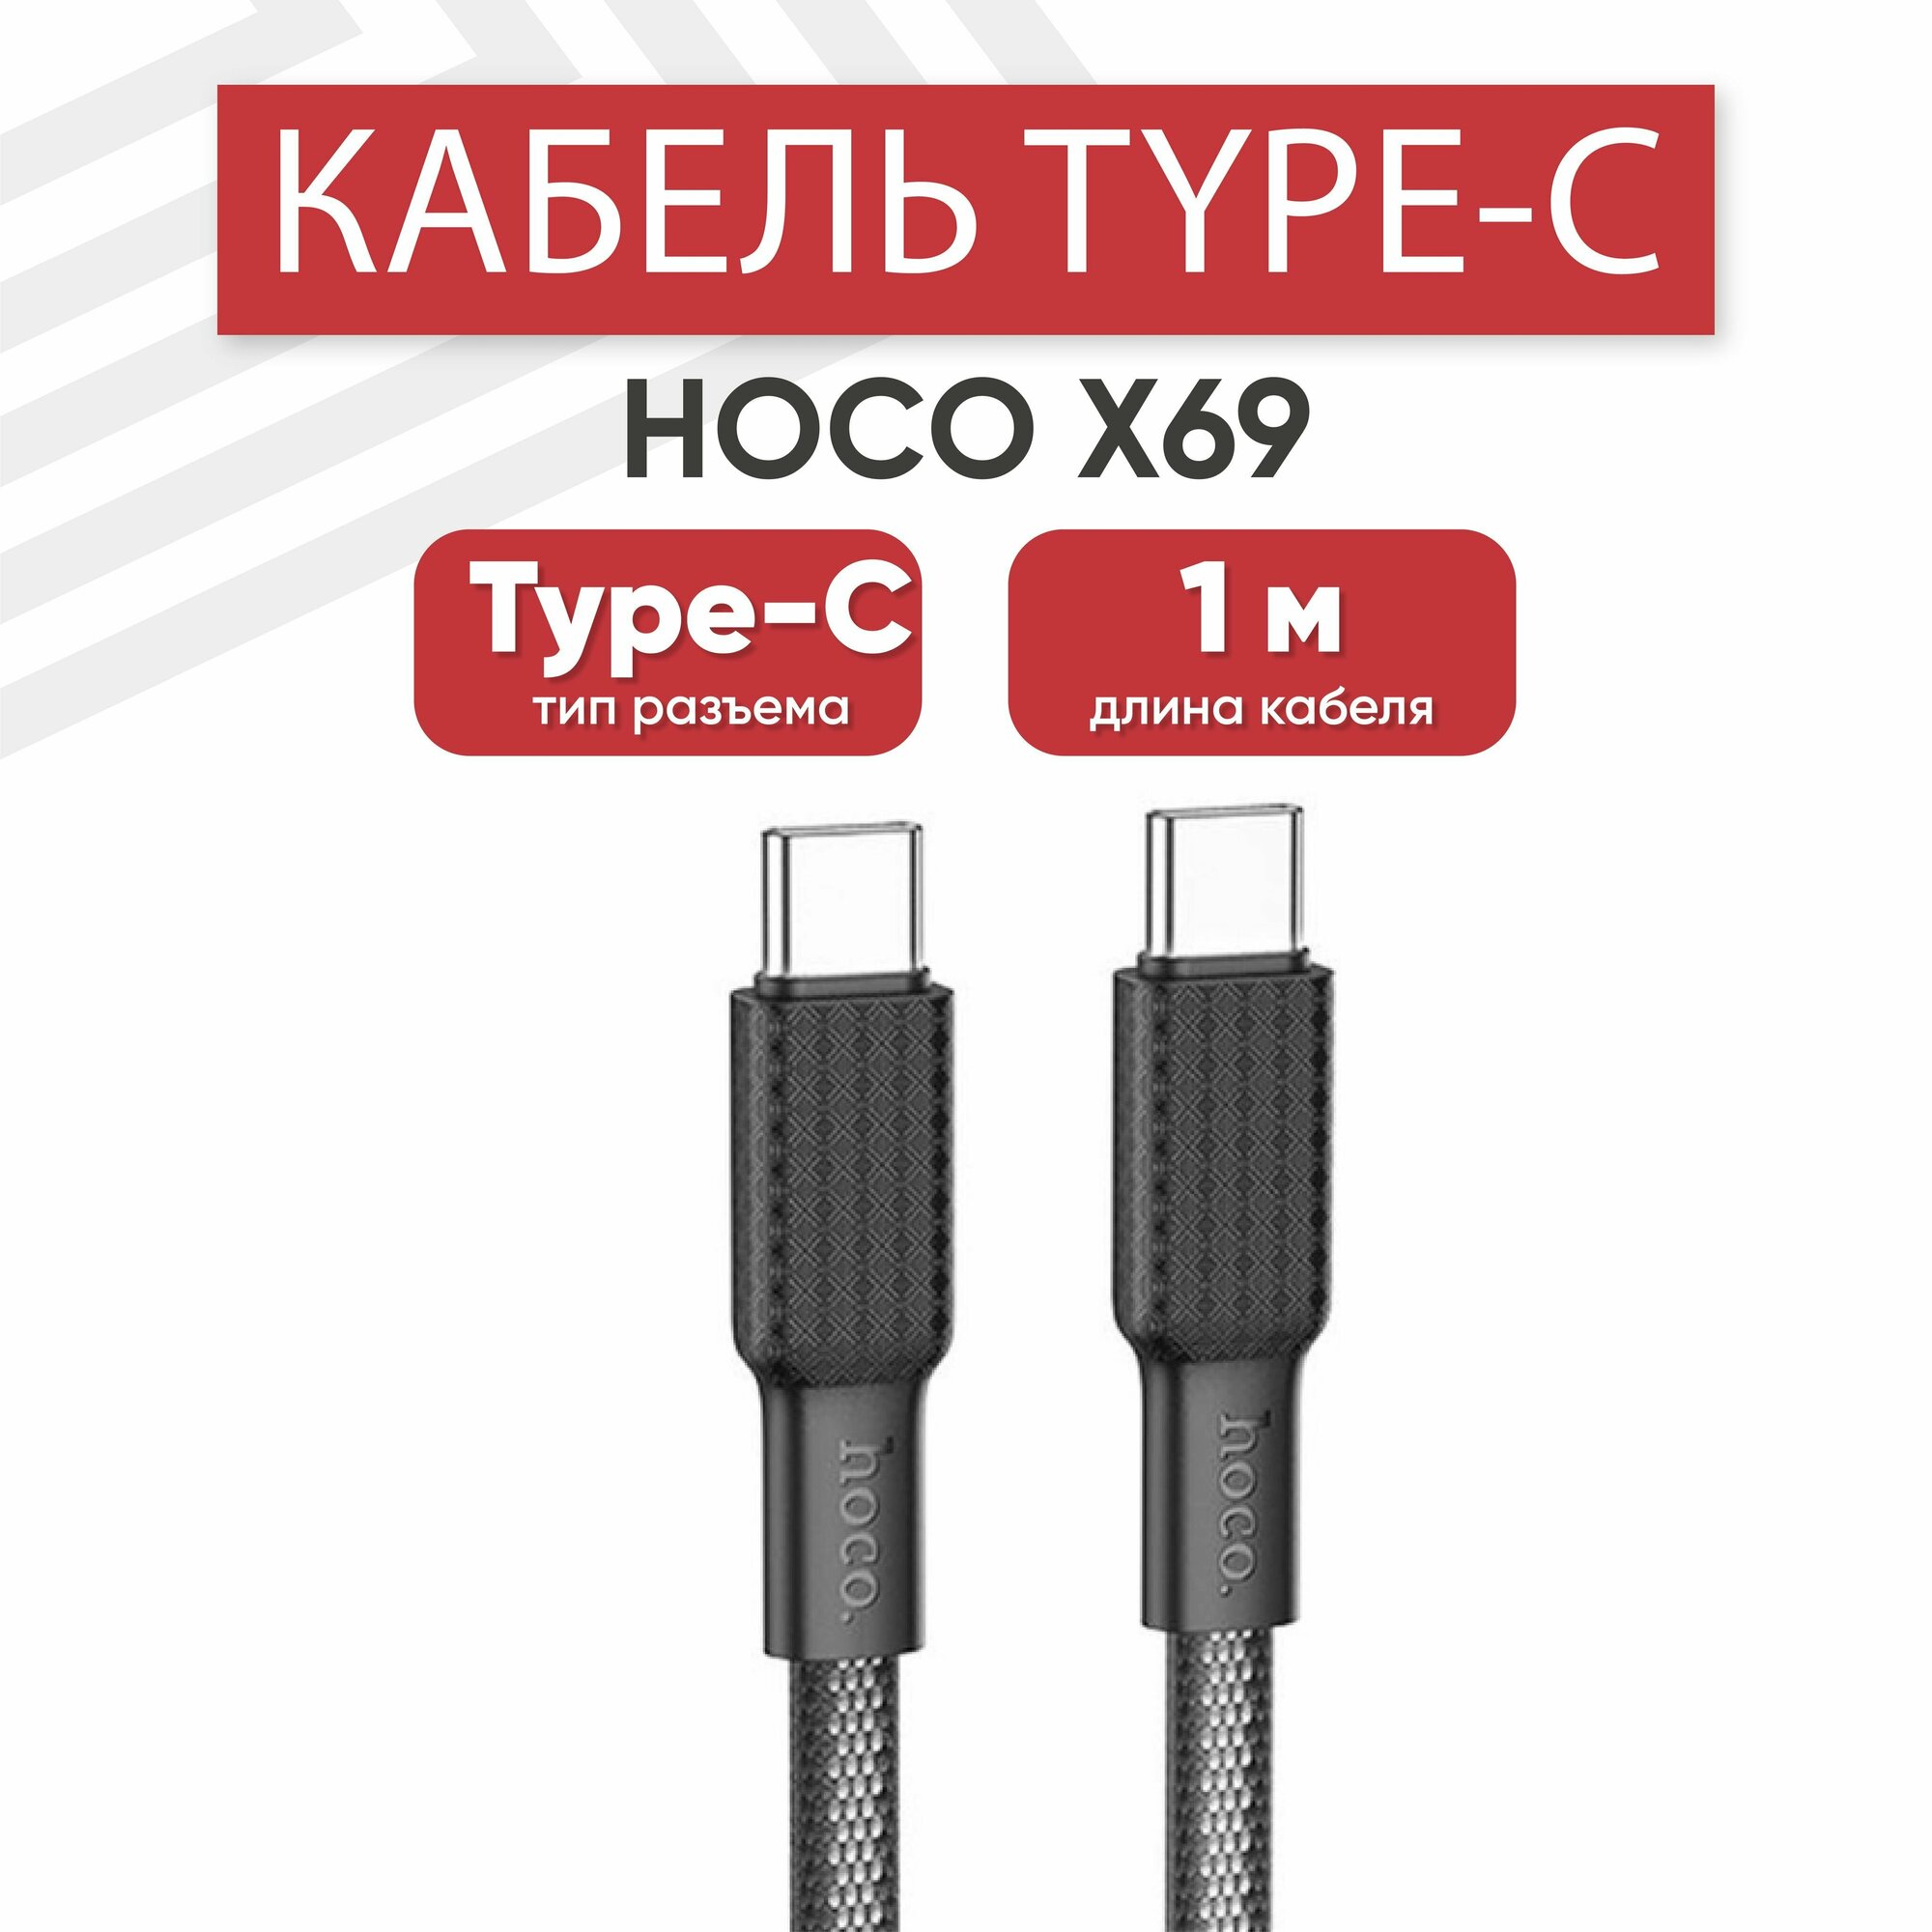 USB-С кабель Hoco X69 Jaeger для зарядки, передачи данных, Type-C, 3А, PD 60Вт, 1 метр, нейлон, черный, белый